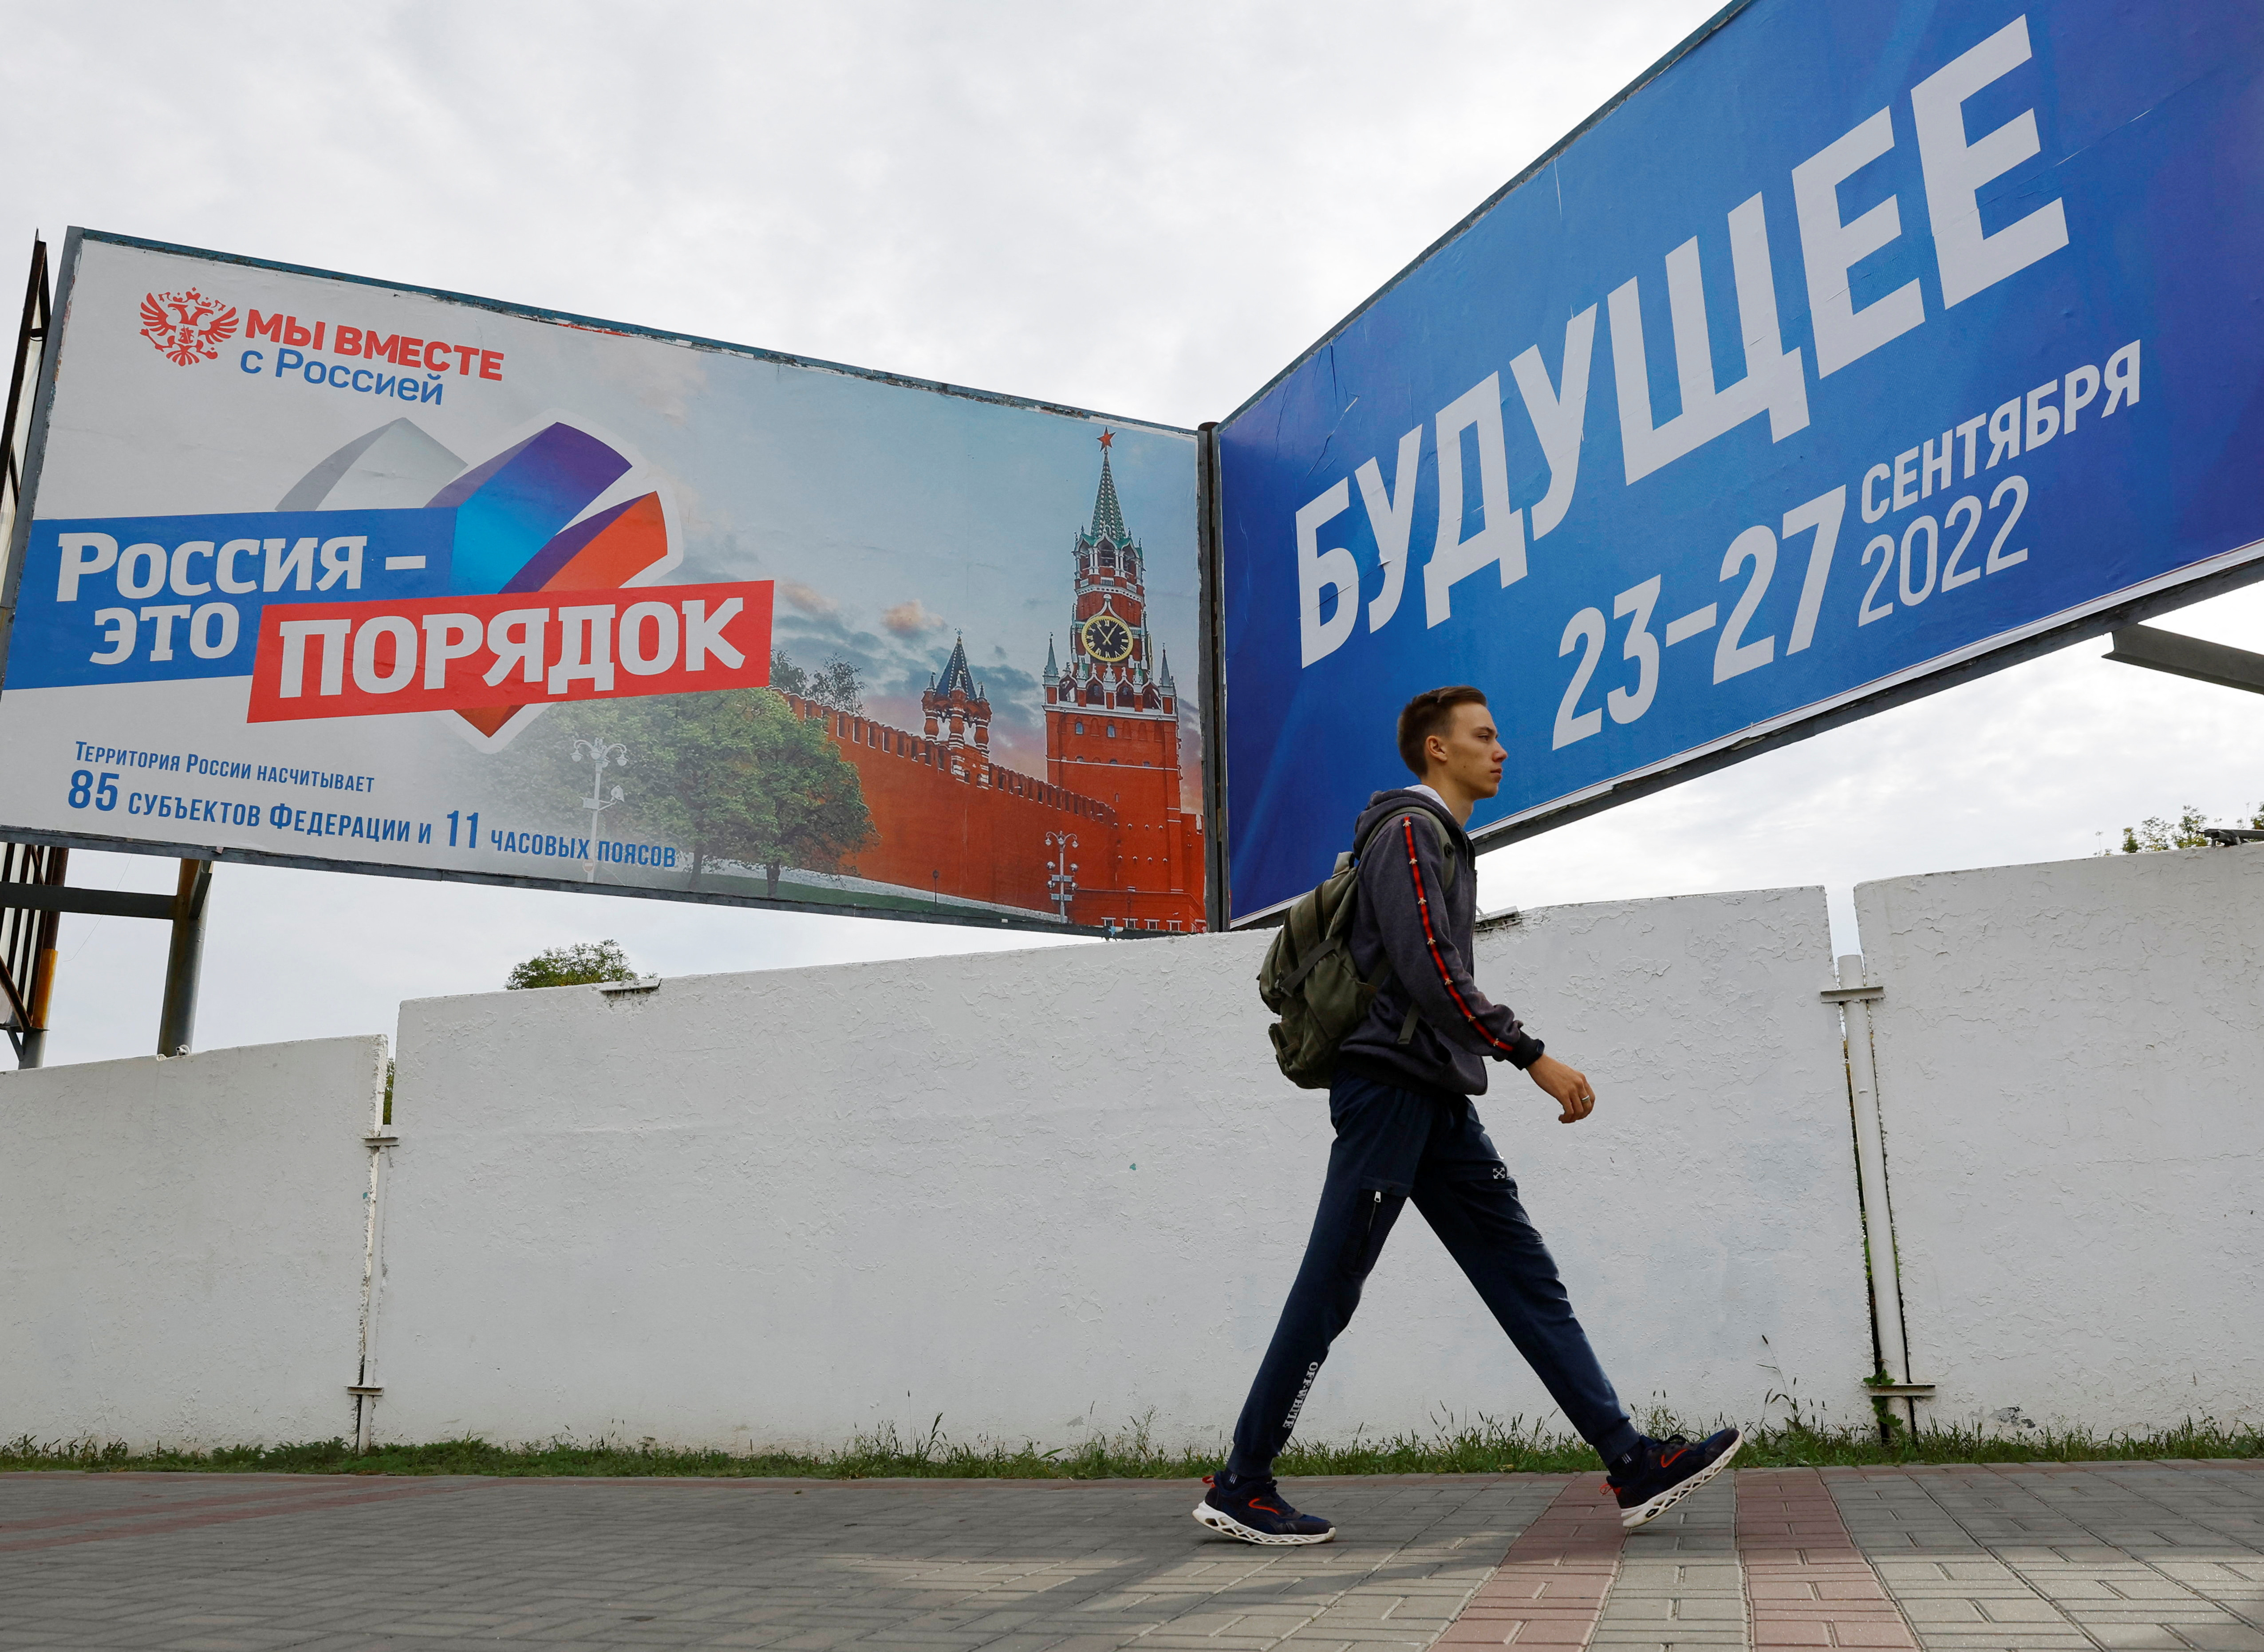 La Russie en passe d'annexer les régions ukrainiennes suite aux référendums